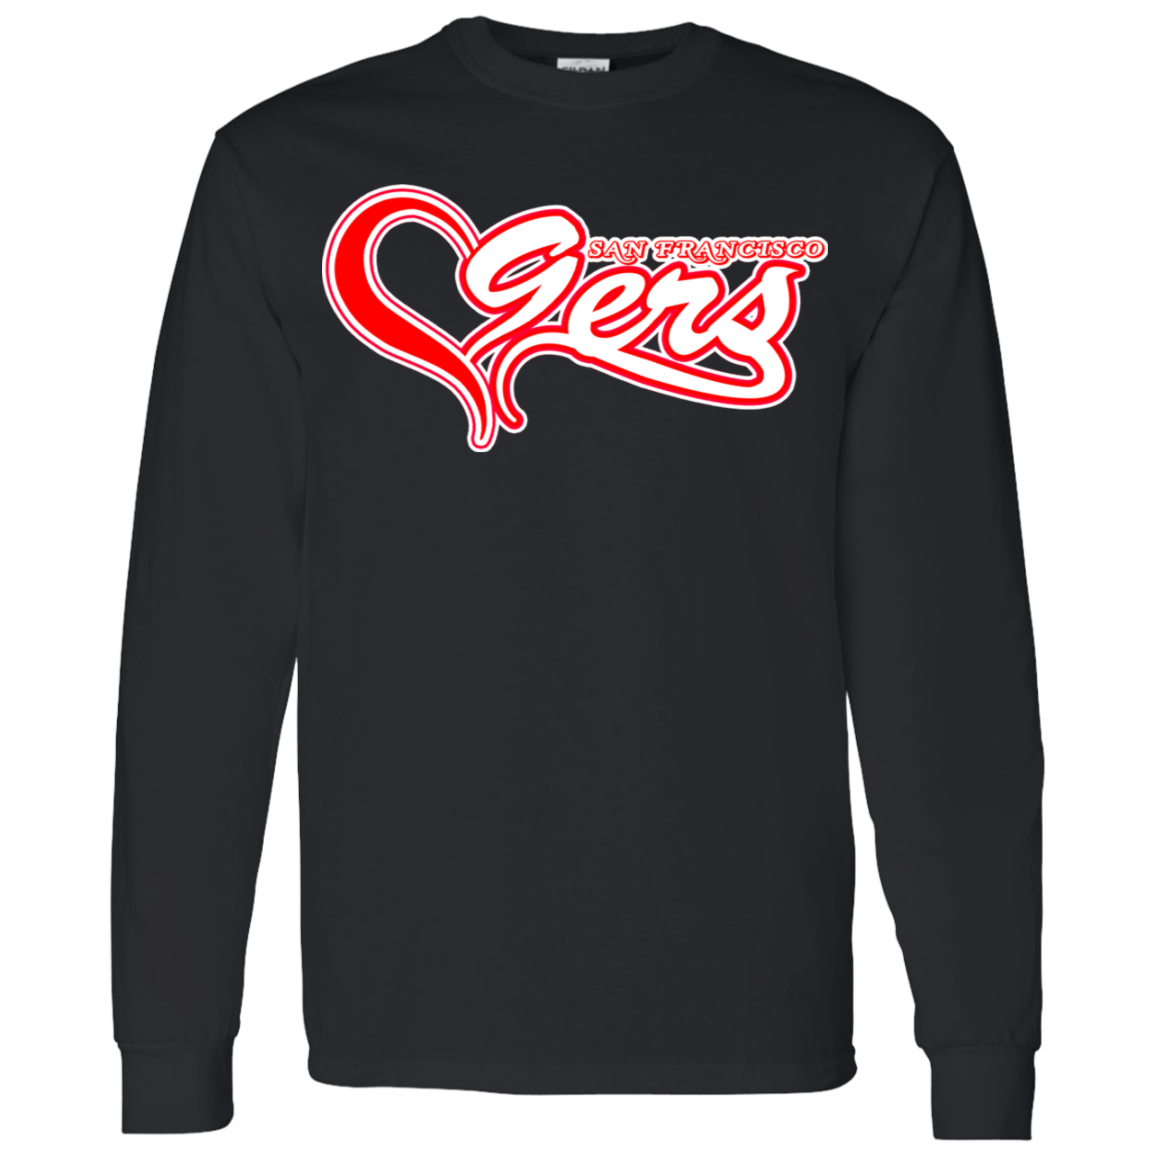 ArtichokeUSA Custom Design #50. 9ers Love. SF 49ers Fan Art. Let's Make Your Own Custom Team Shirt. 100% Cotton Jersey Knit T-Shirt